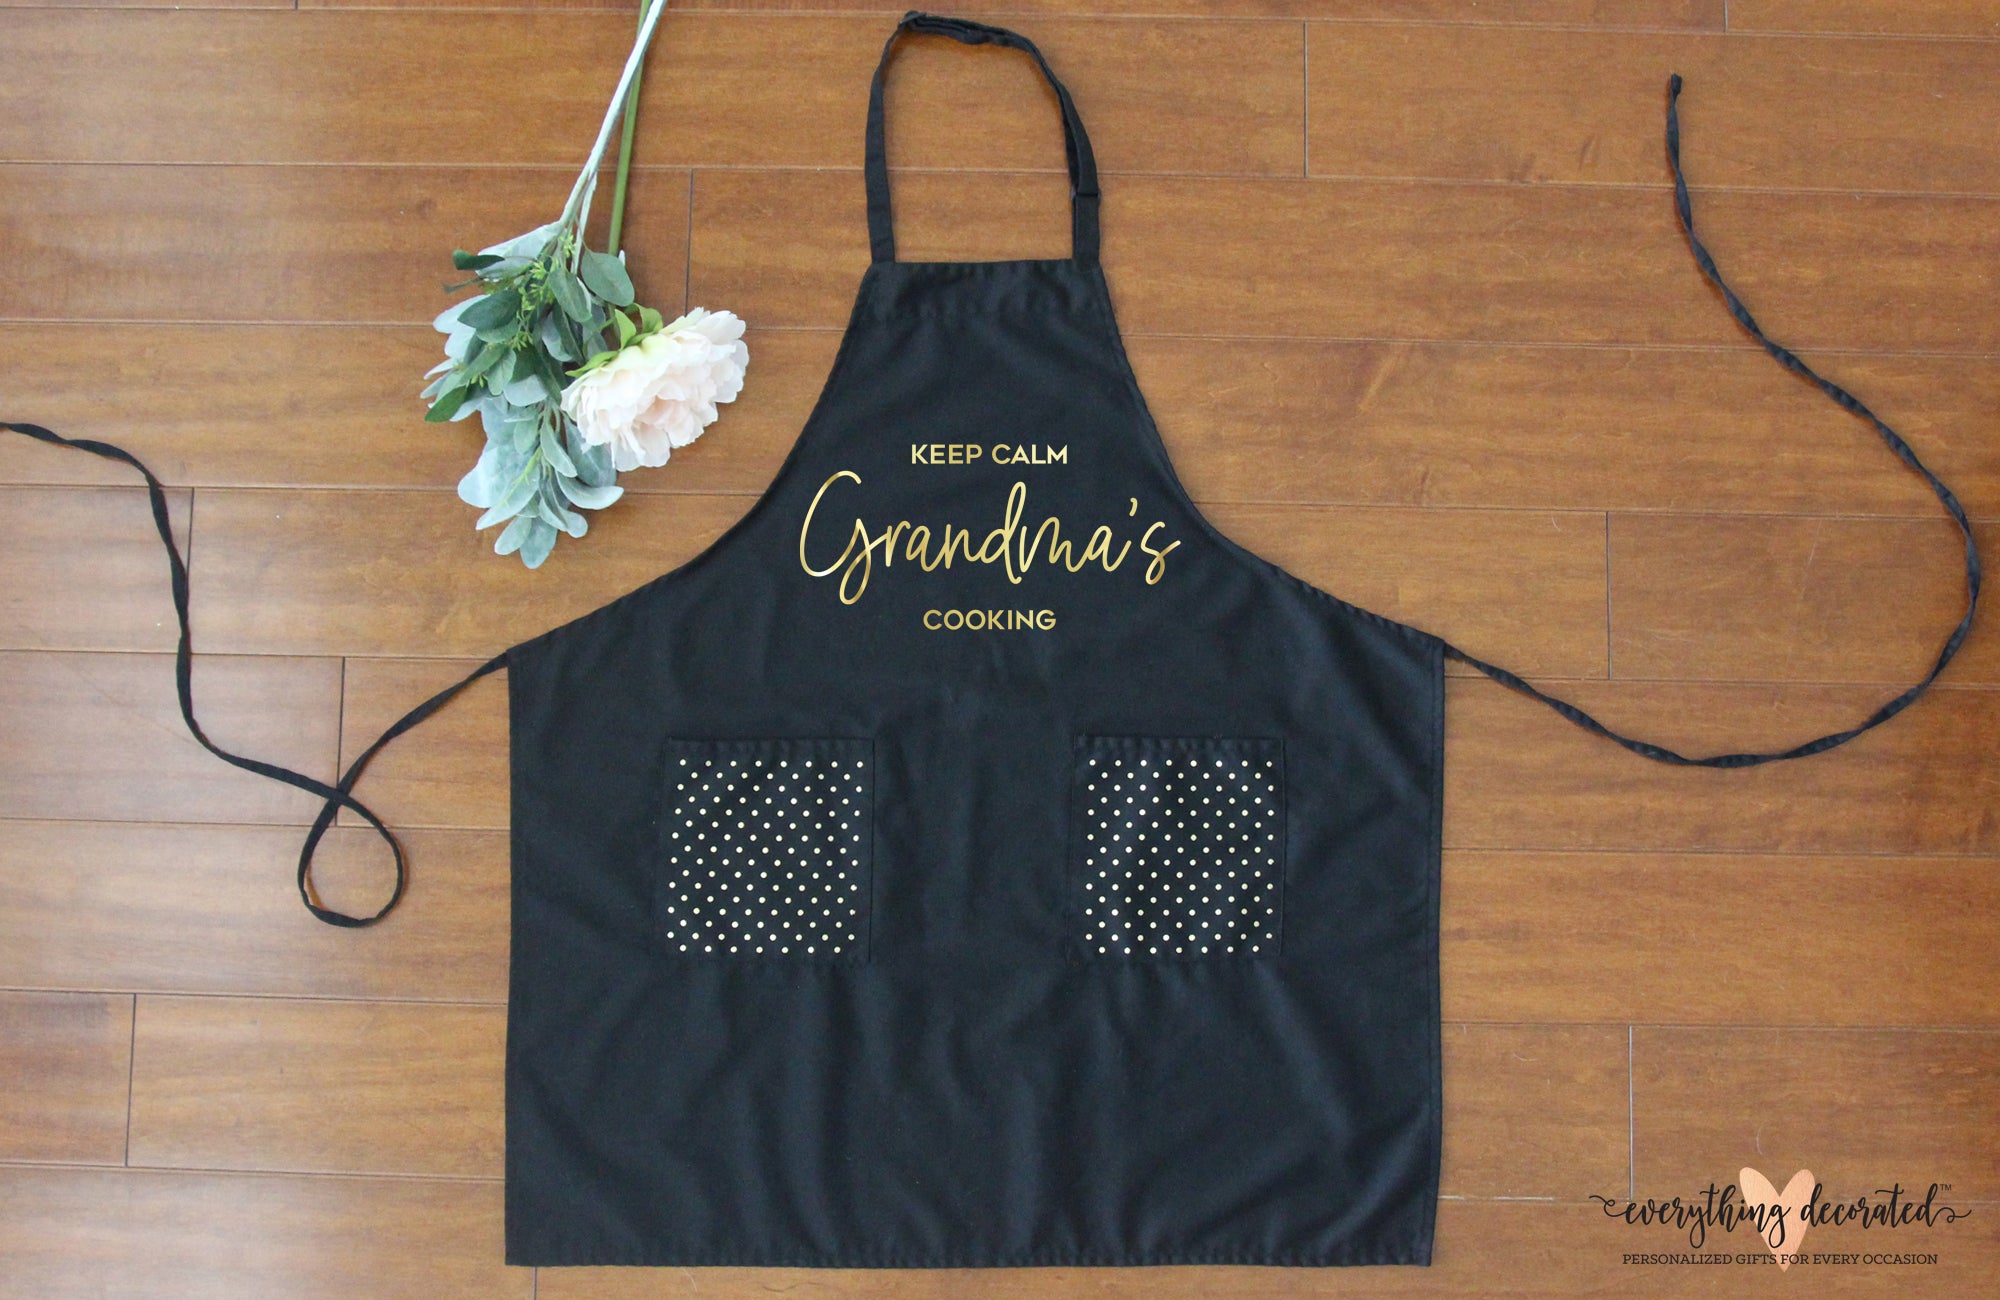 Personalized Grandma's Kitchen Apron